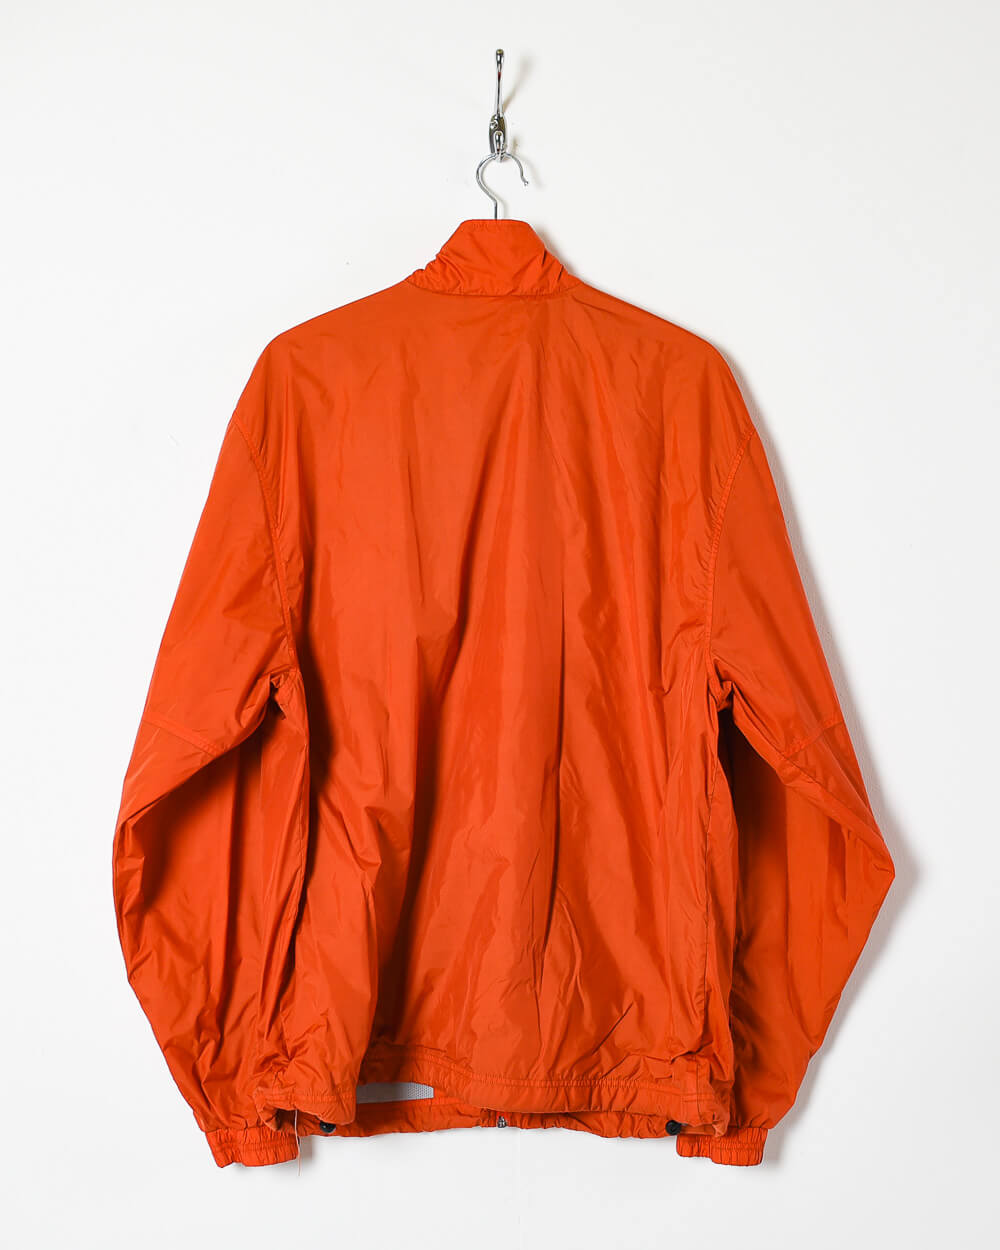 Orange Adidas Windbreaker Jacket - Large